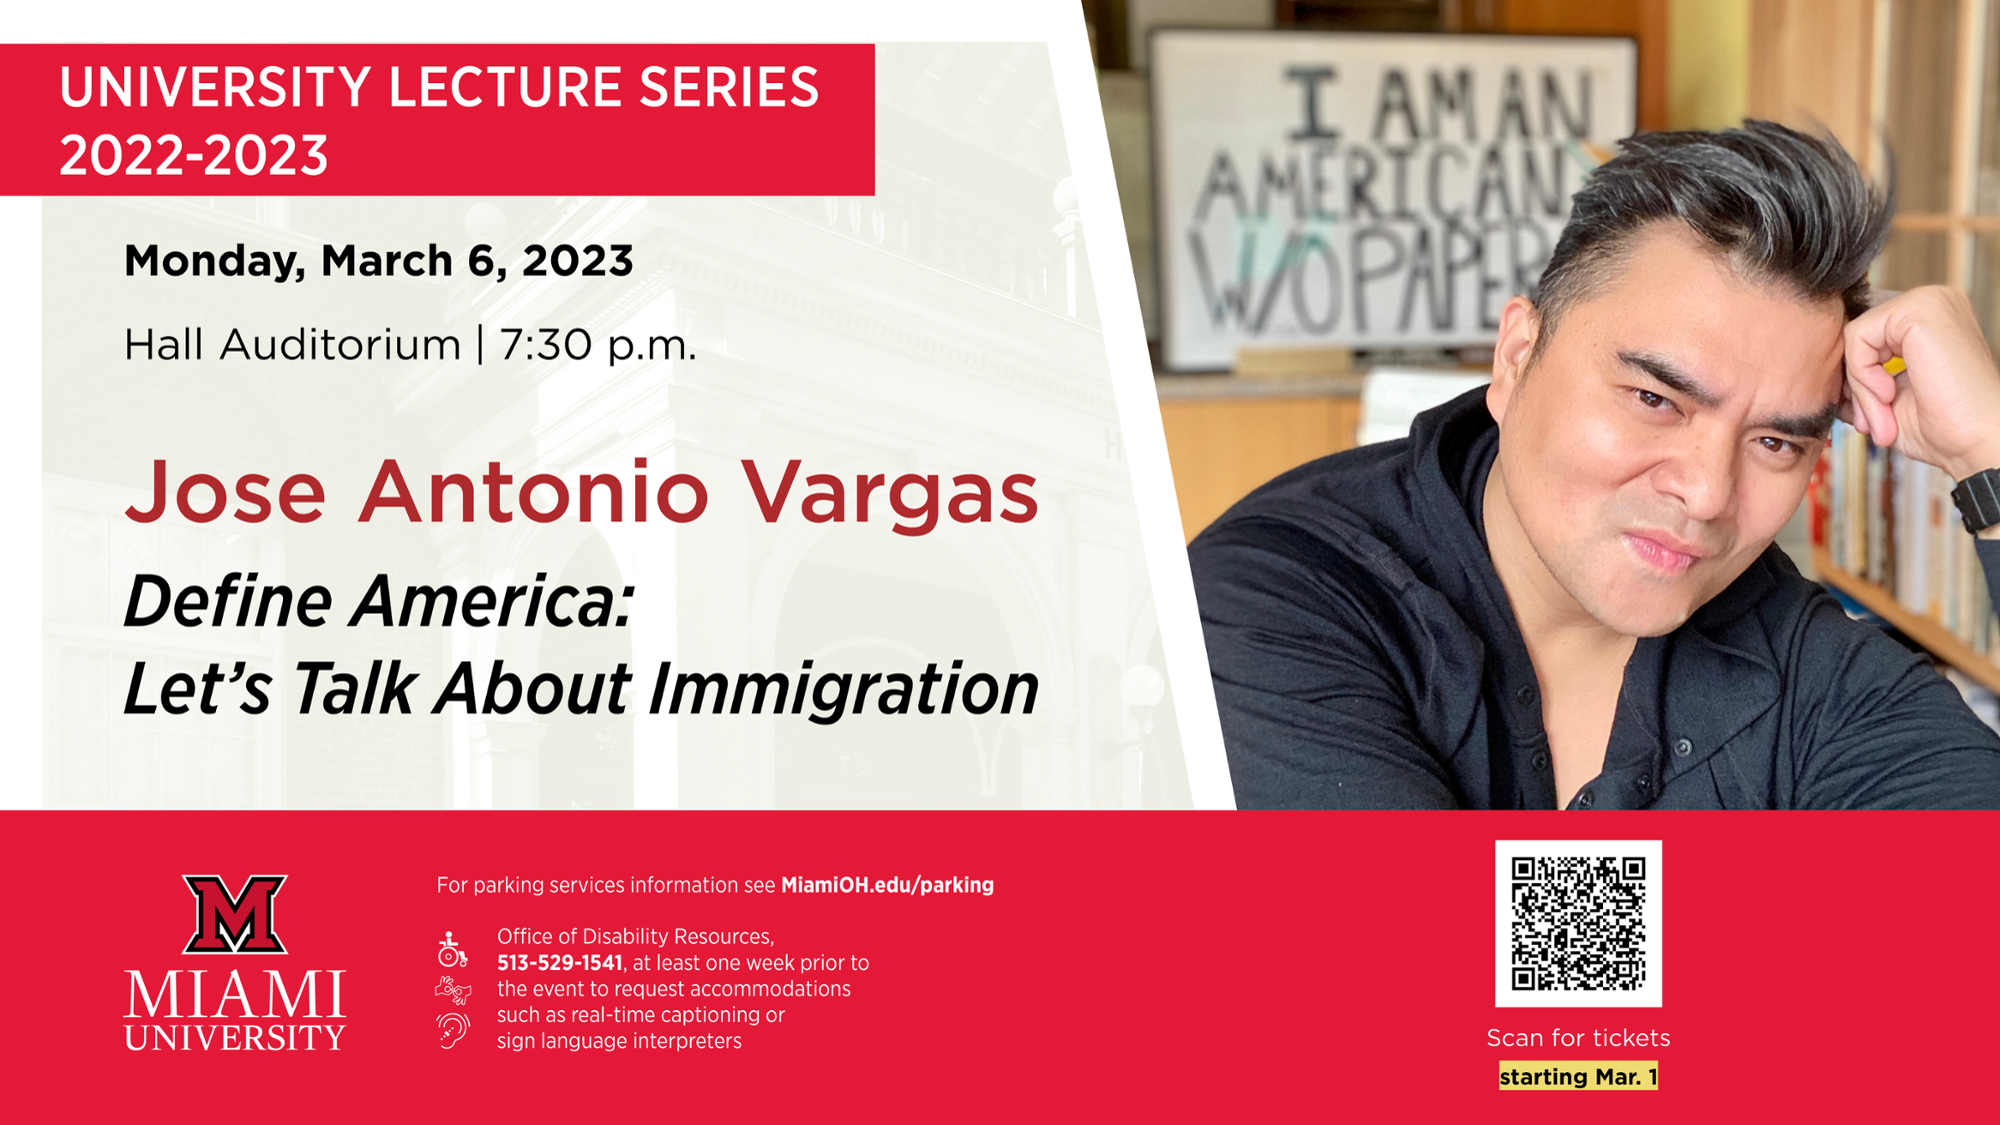 University Lecture Series Graphic. Jose Antonio Vargas. Monday, March 6, 2023. Hall Auditorium 7:30 p.m.